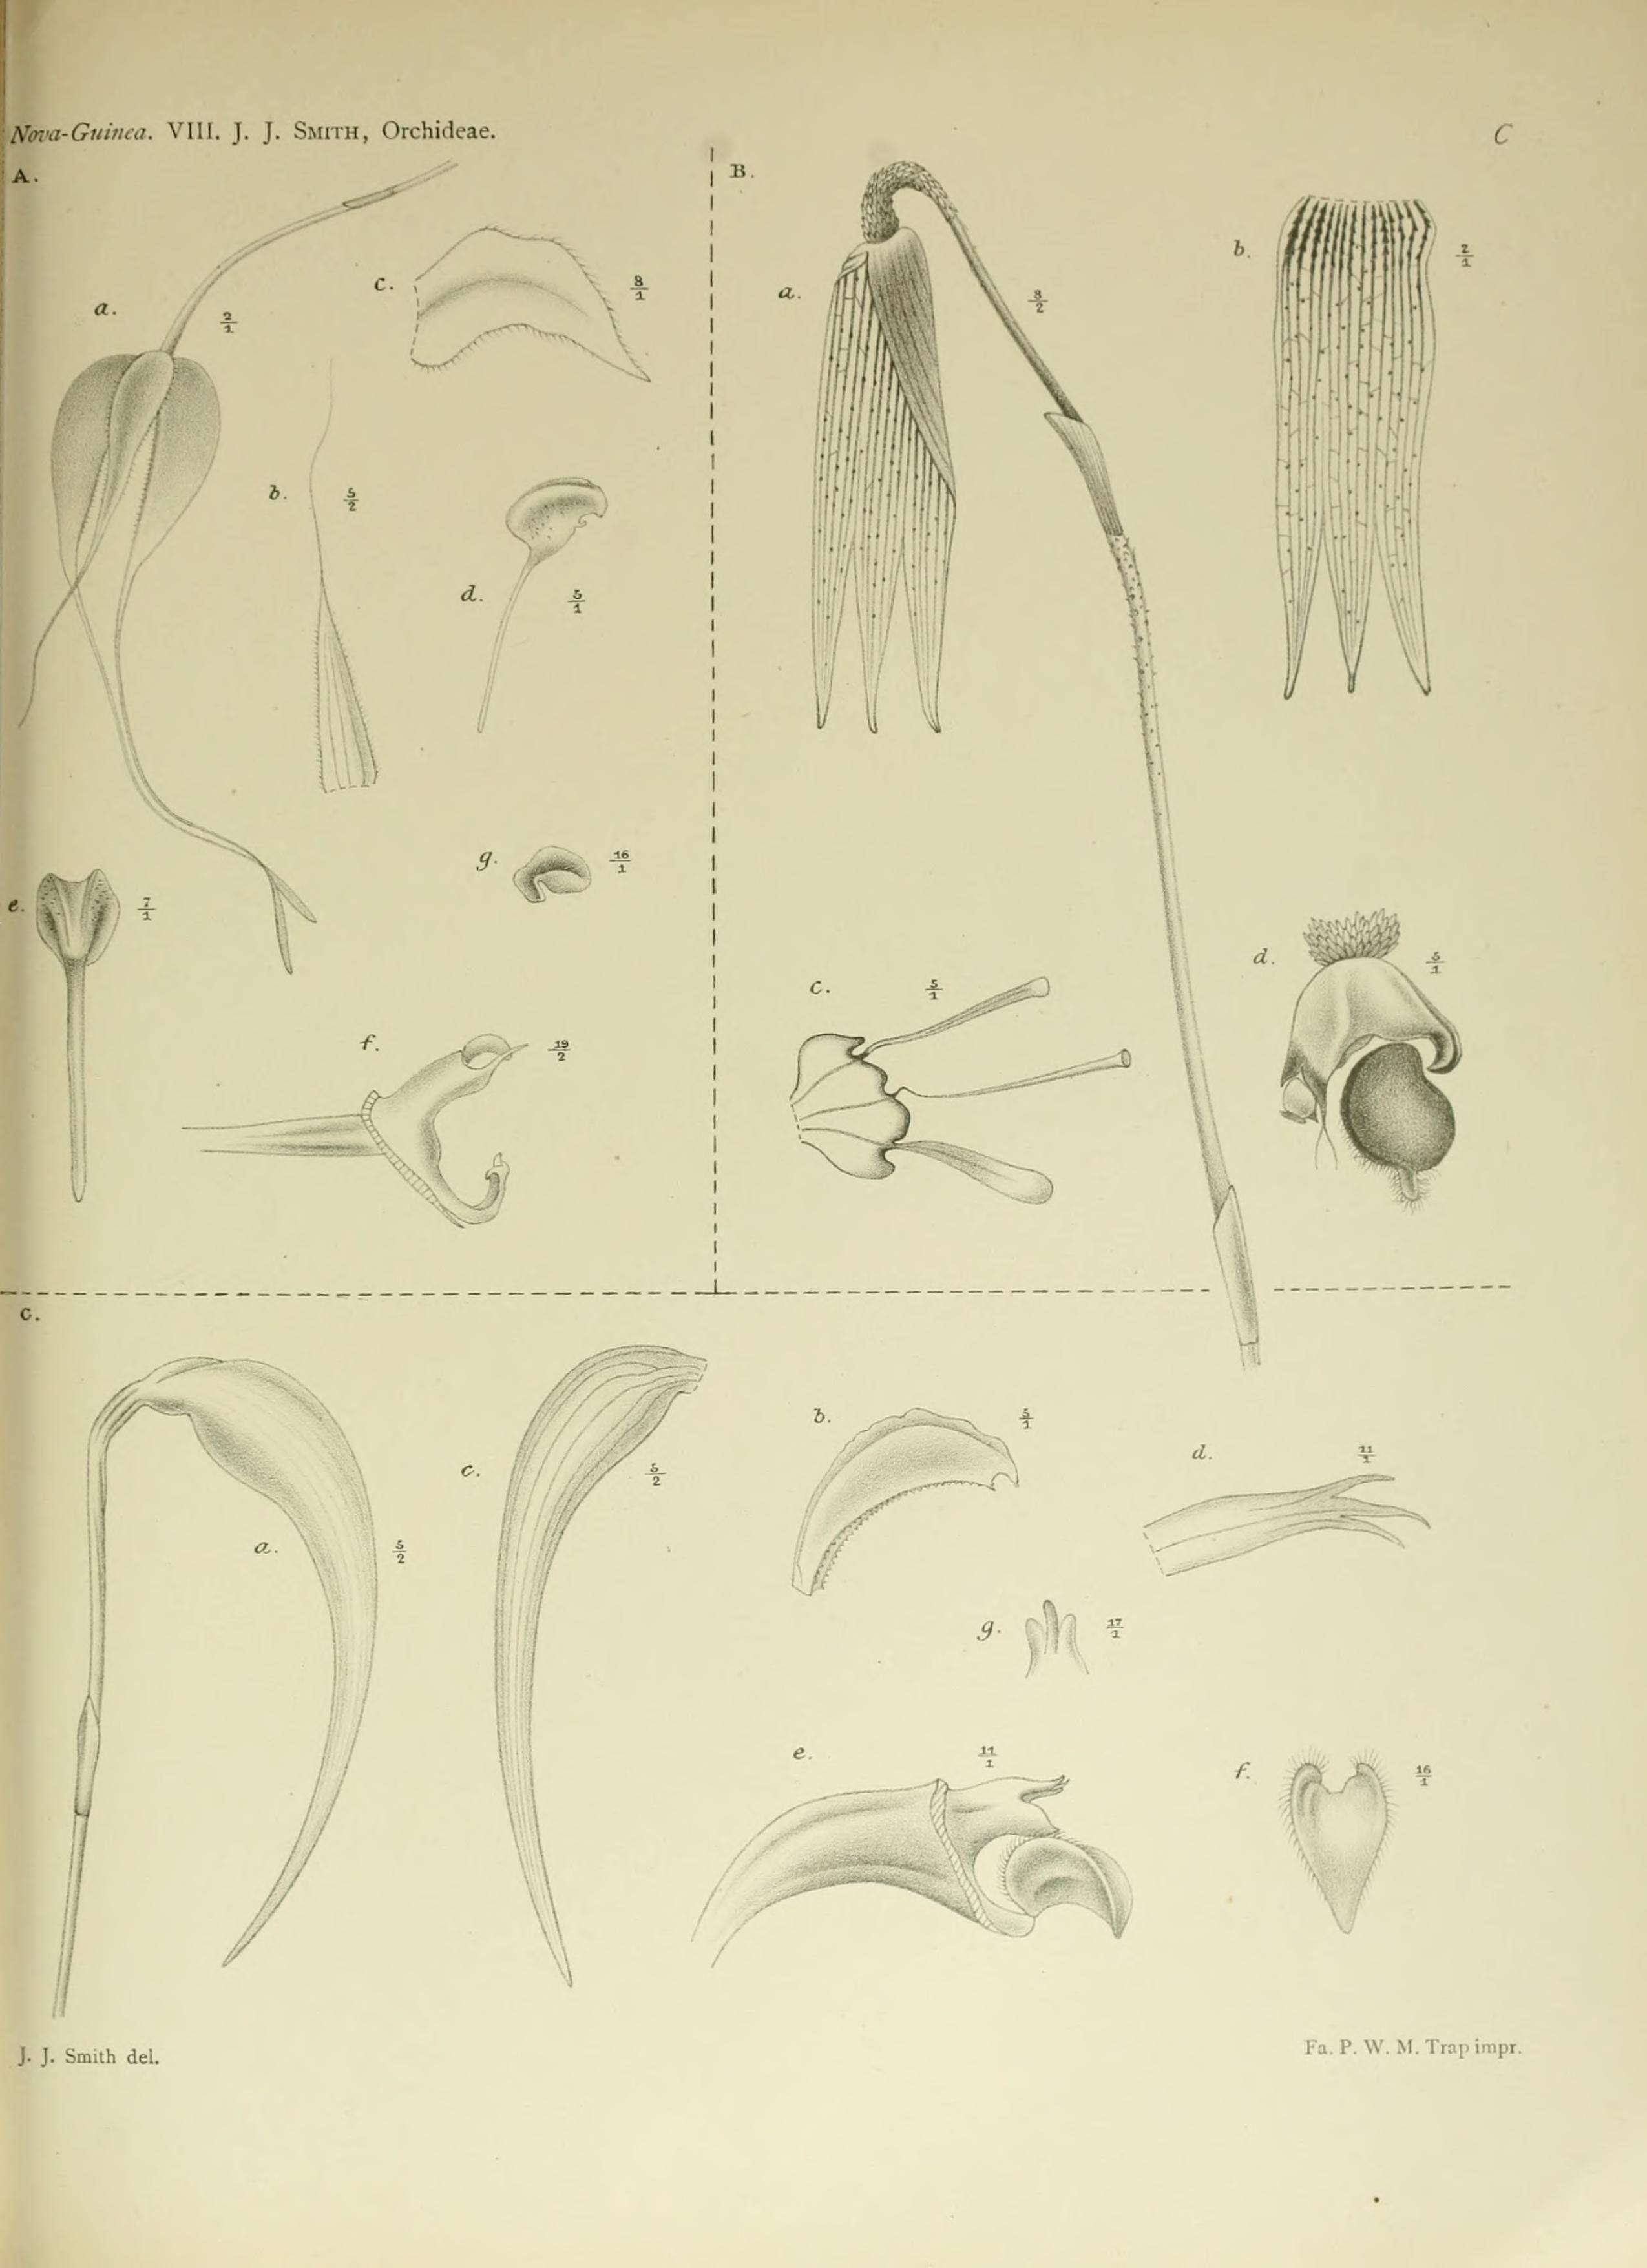 Image of Bulbophyllum nasica Schltr.